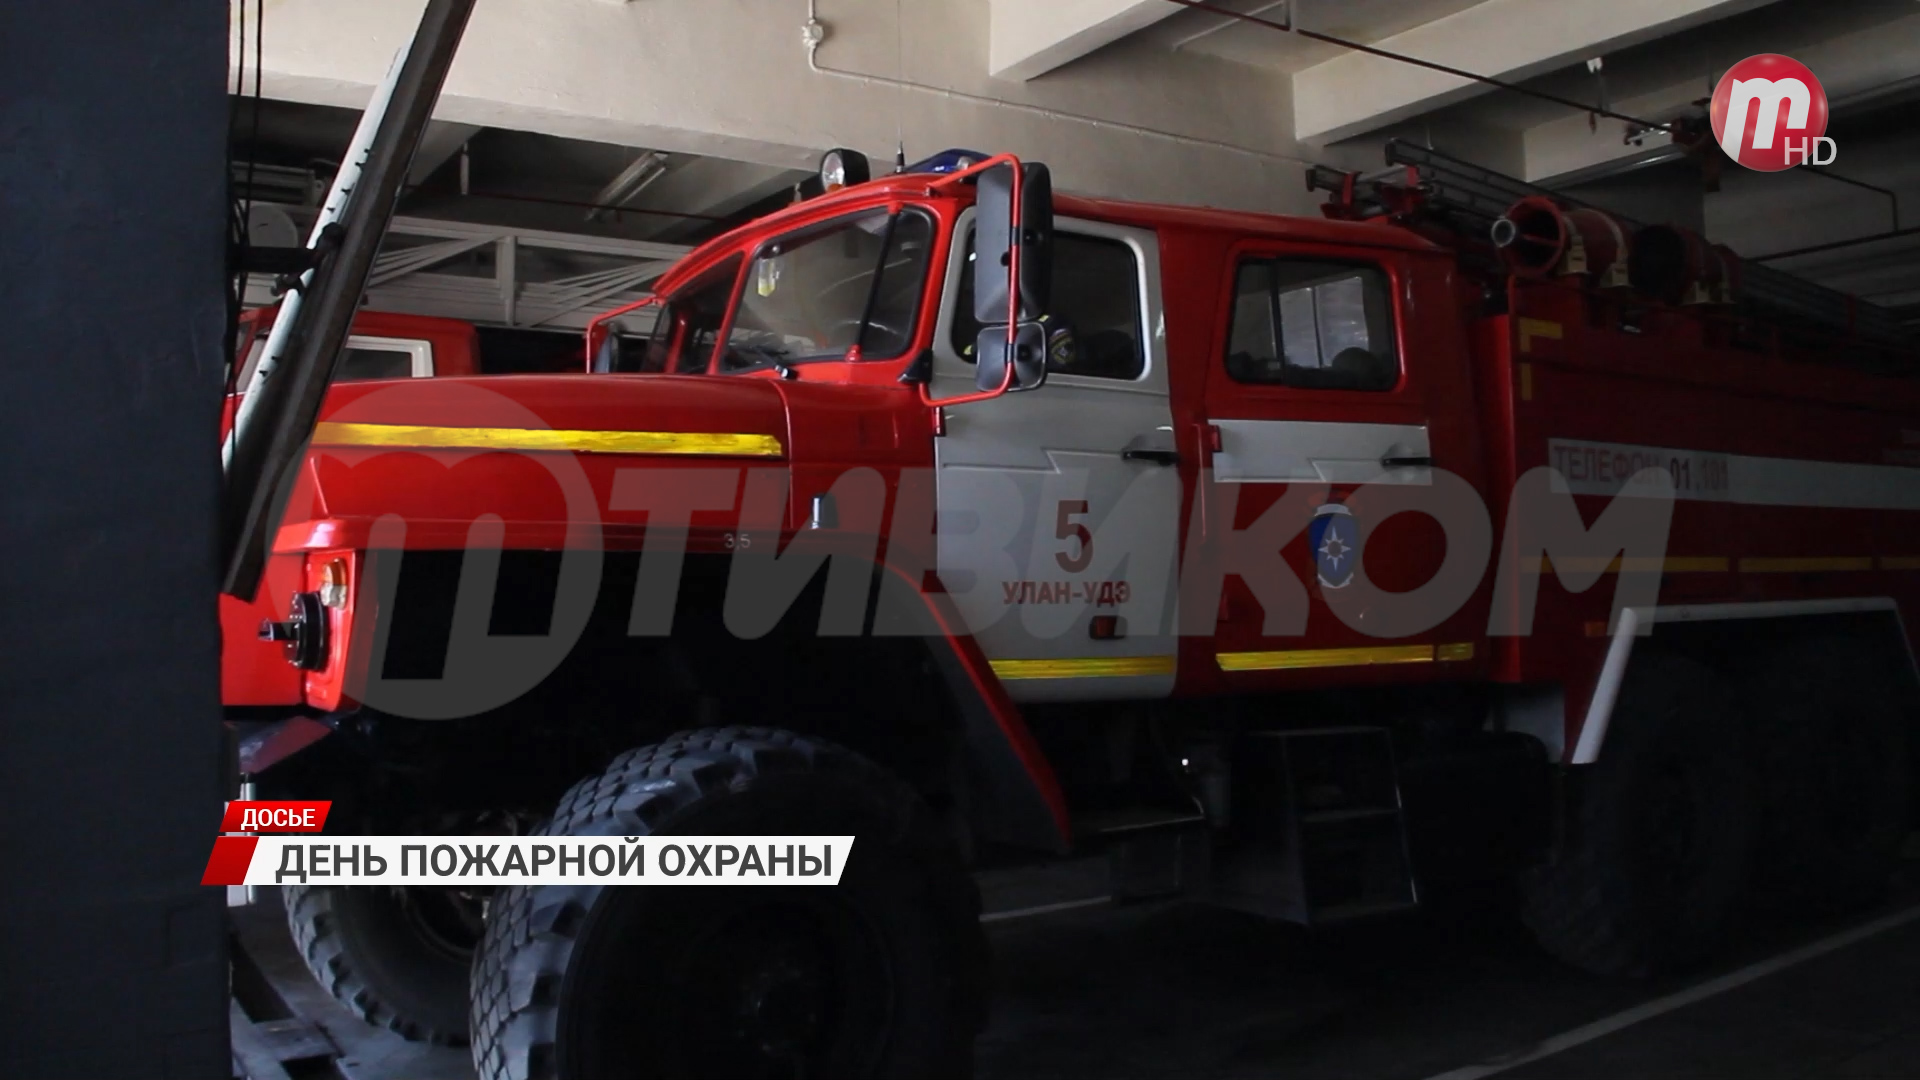 Ежегодно в стране 30 апреля отмечается день пожарной охраны России